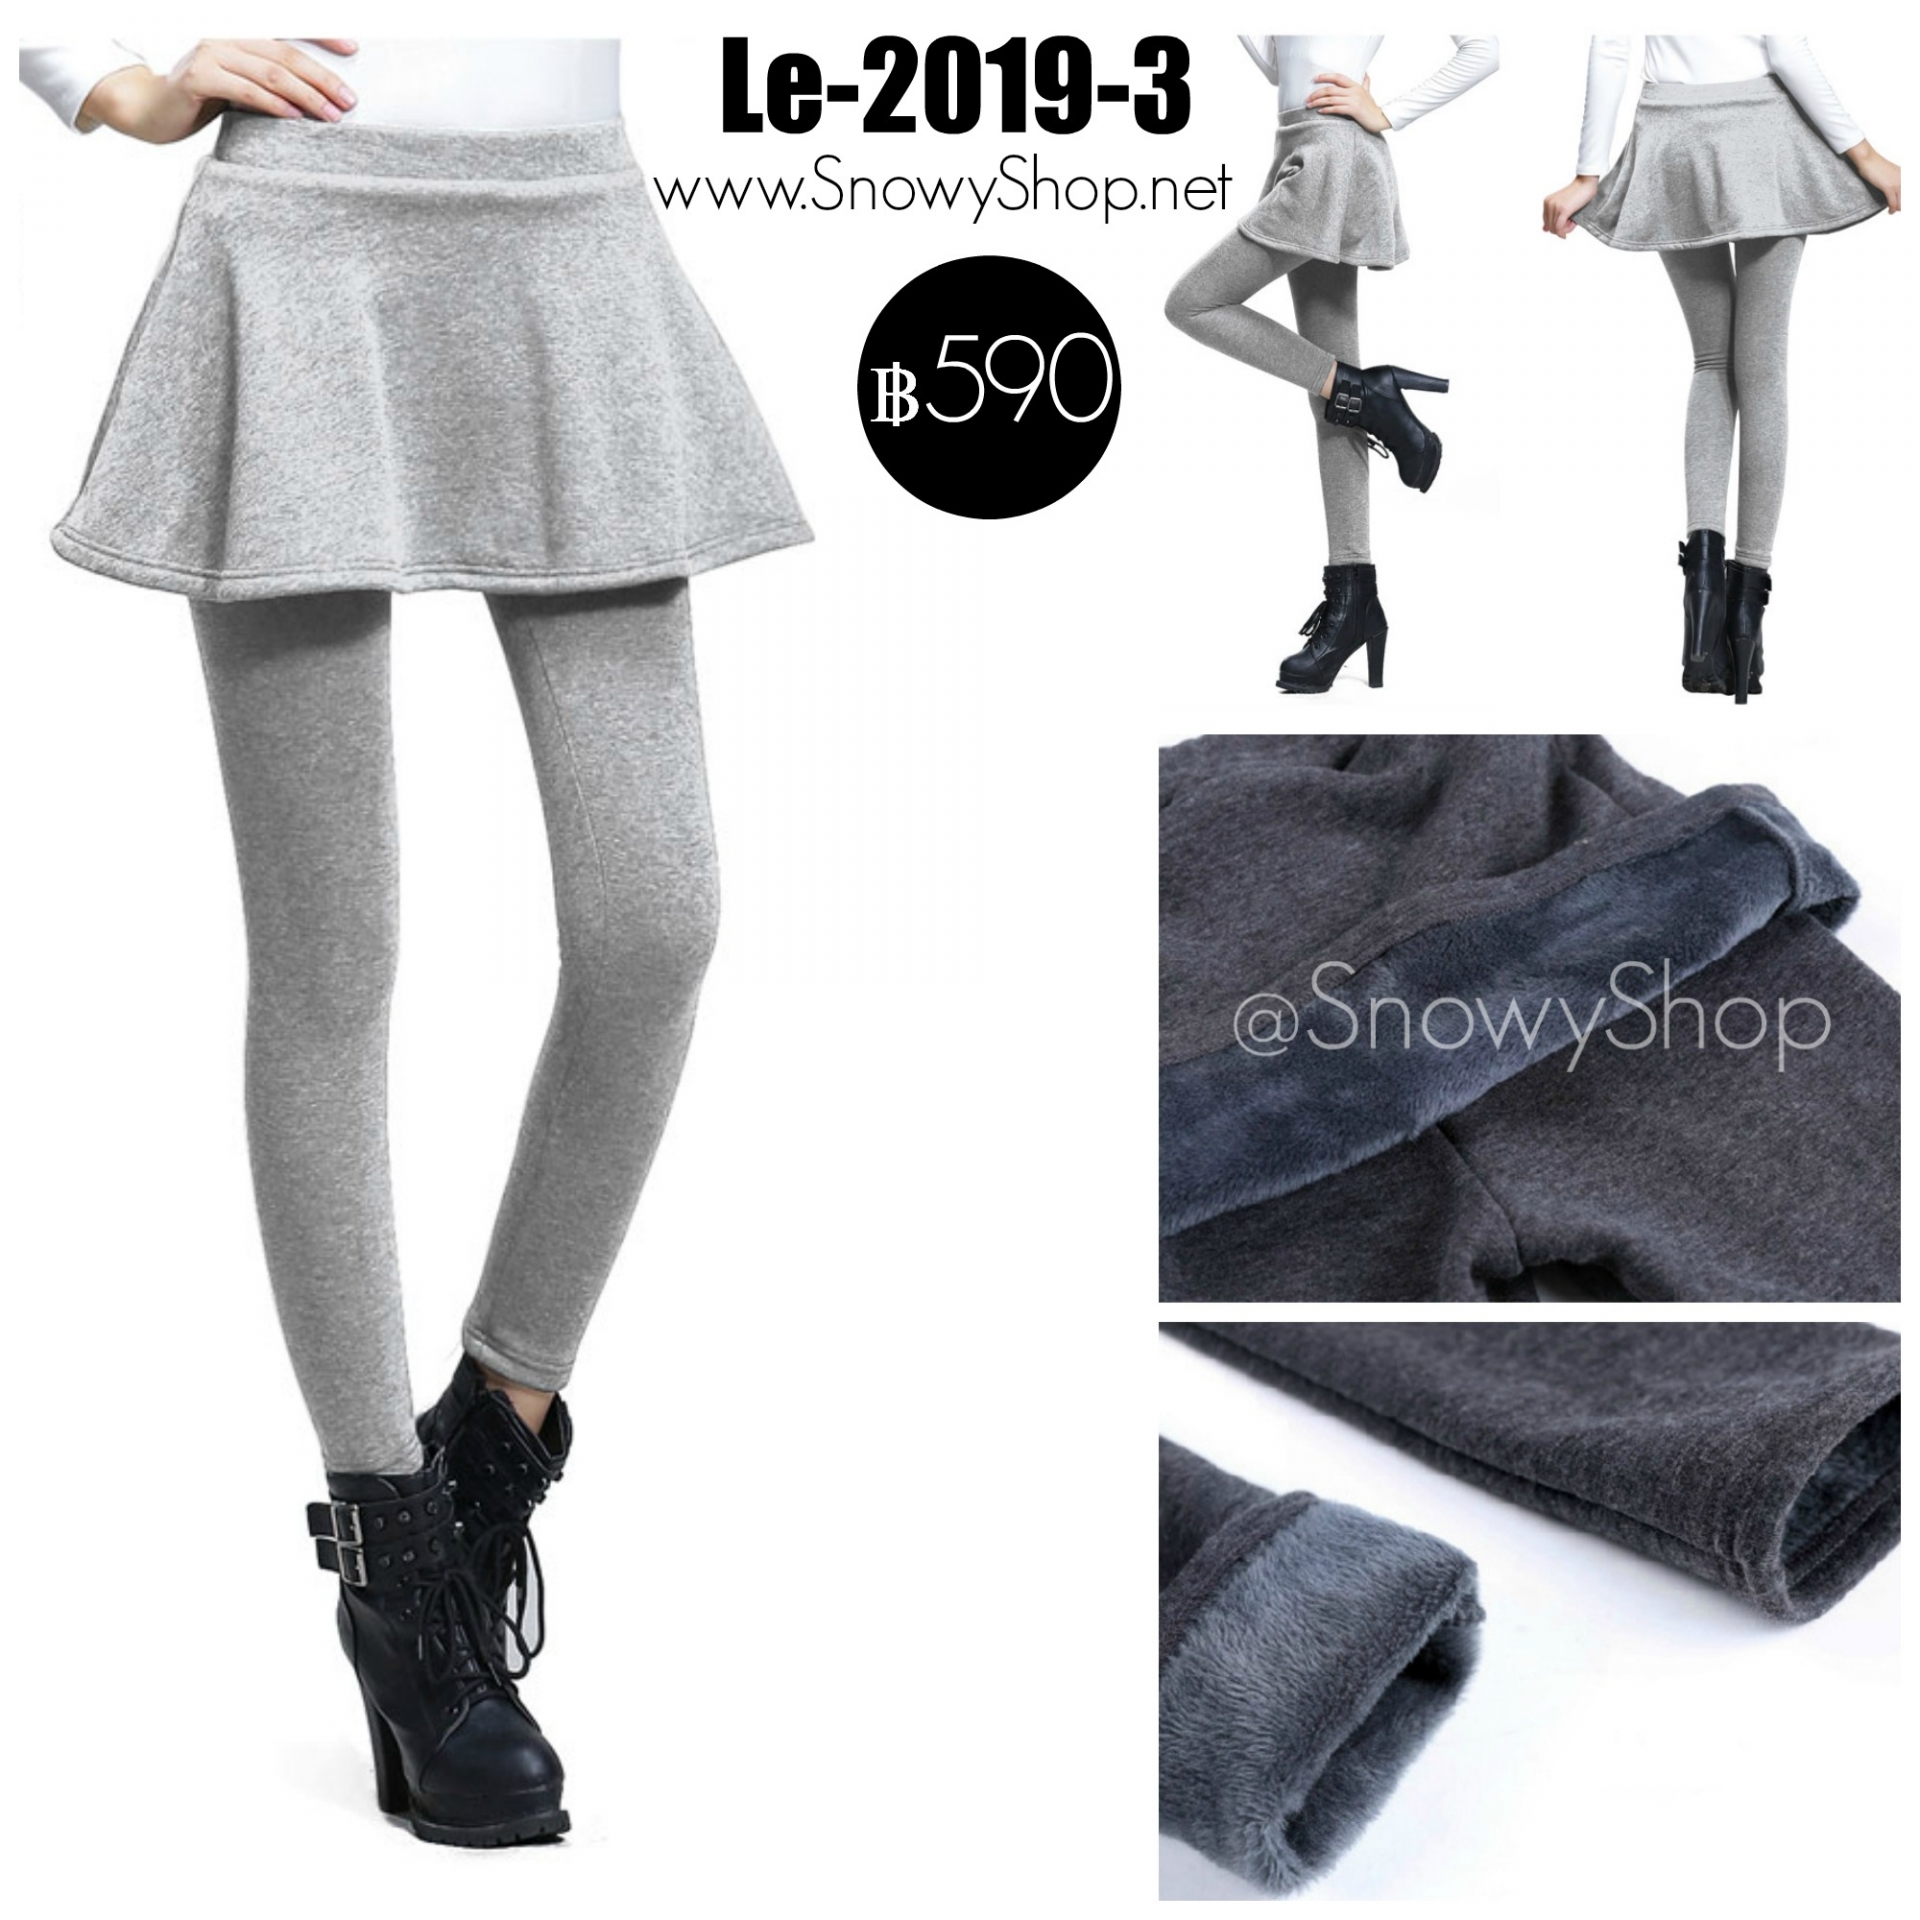  [พร้อมส่ง S M L XL 2XL] [Le-2019-3] Leggings เลคกิ้งติดกระโปรงระบายสีเทาอ่อน ผ้าวูลหนาใส่กันหนาวดีมากๆ